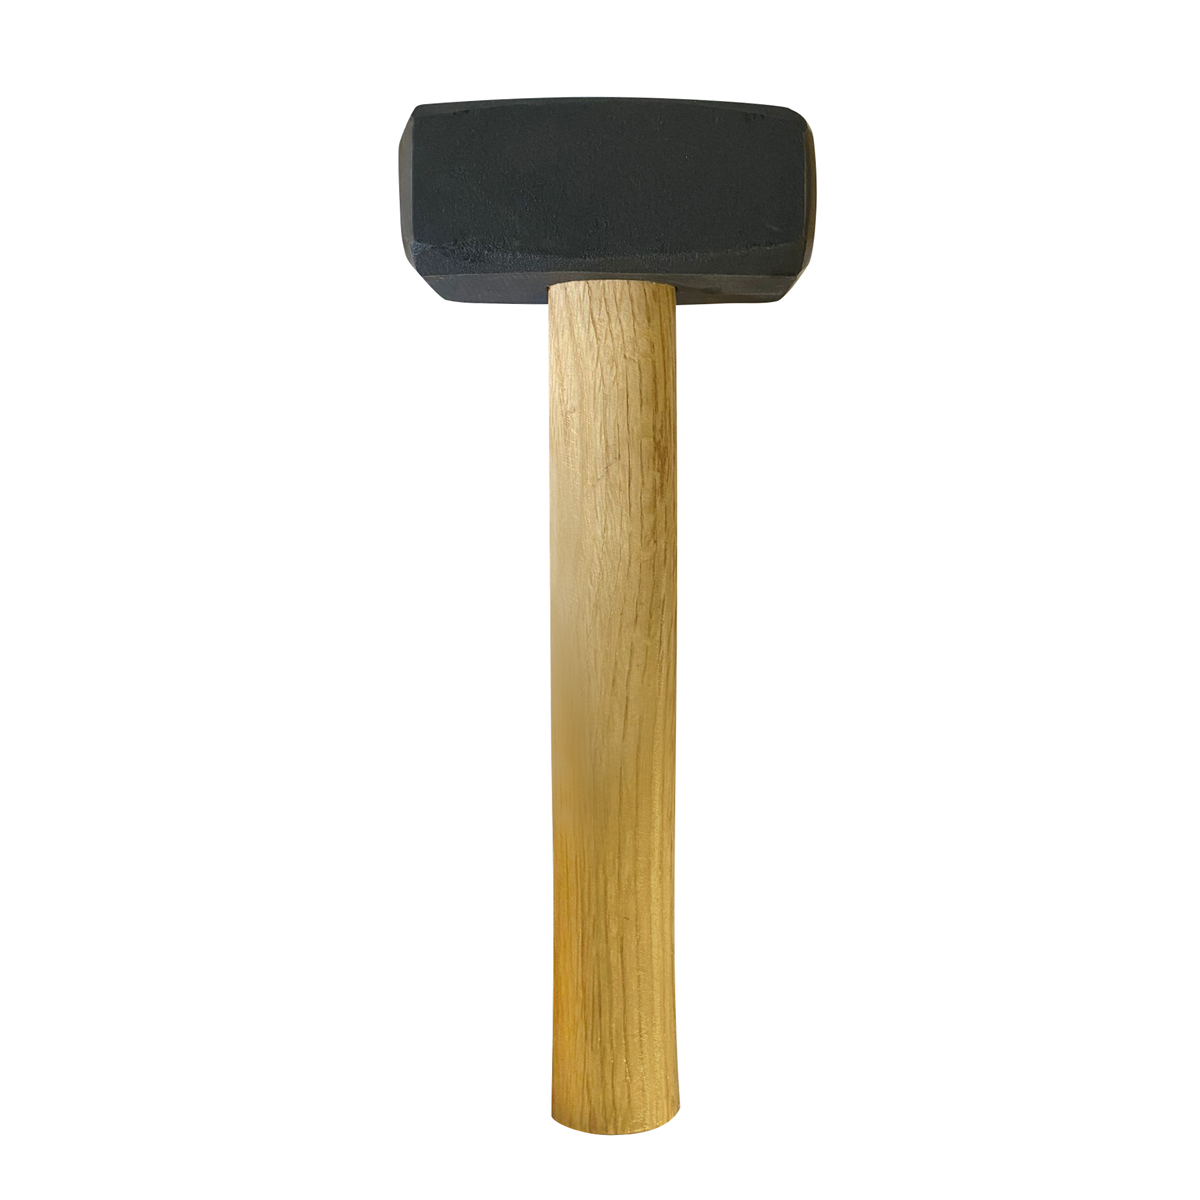 Hammer 2 kg - Handfäustel Holzstiel 30 cm